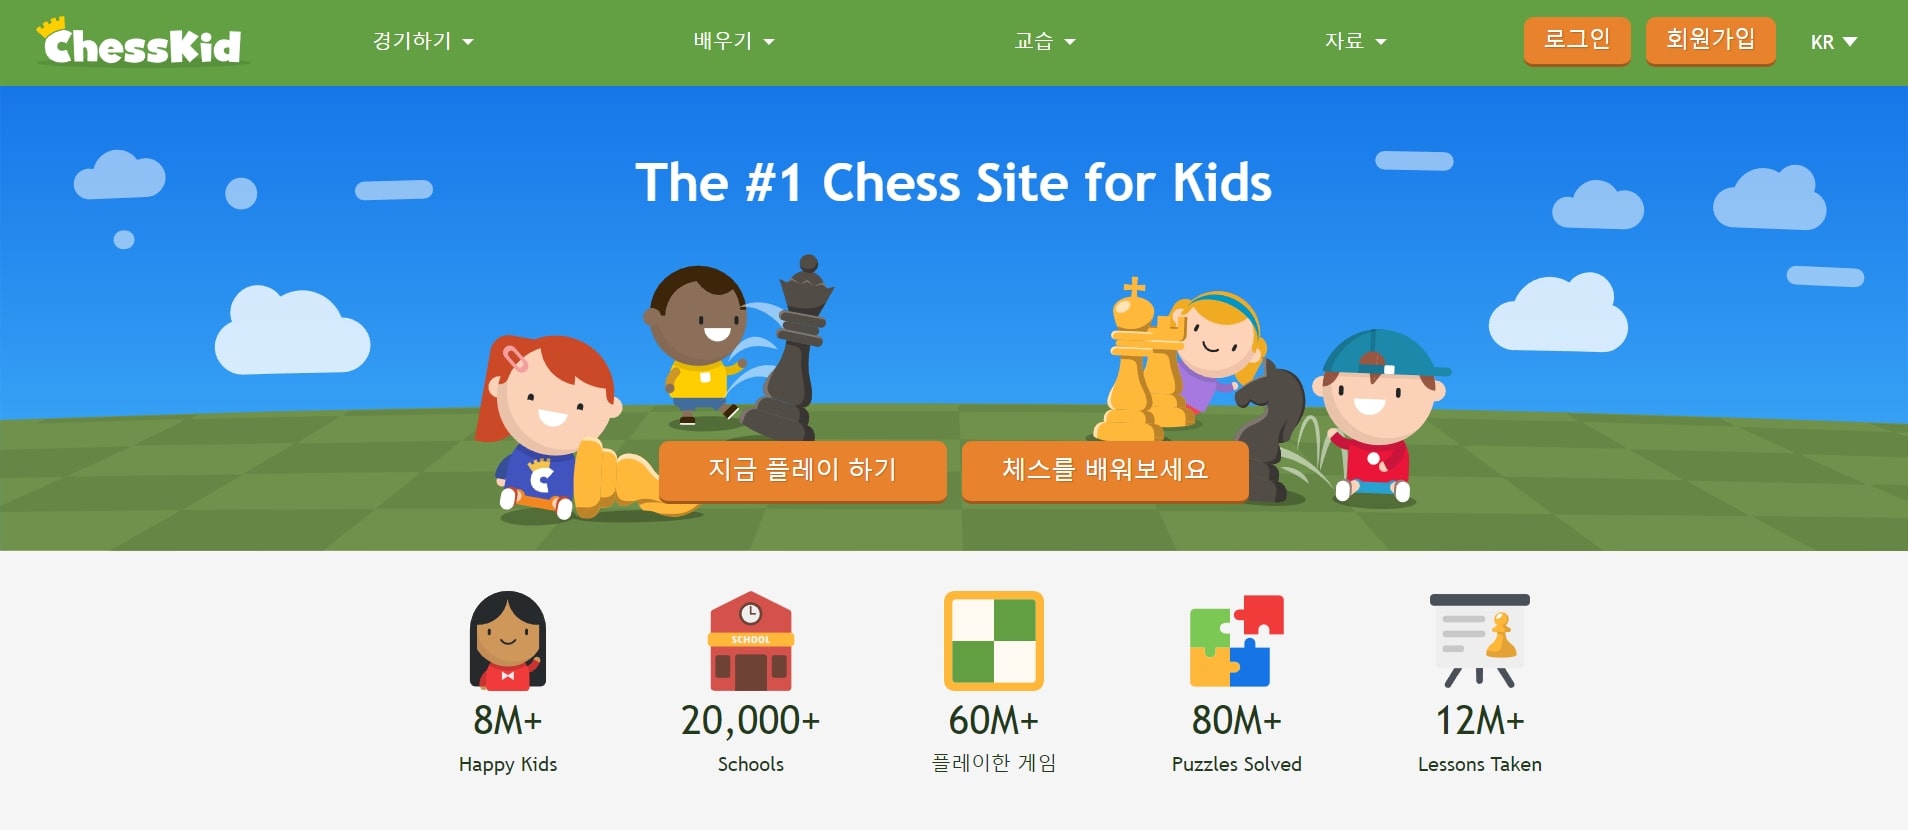 무료 체스 게임 사이트 ChessKid 홈페이지 메인화면